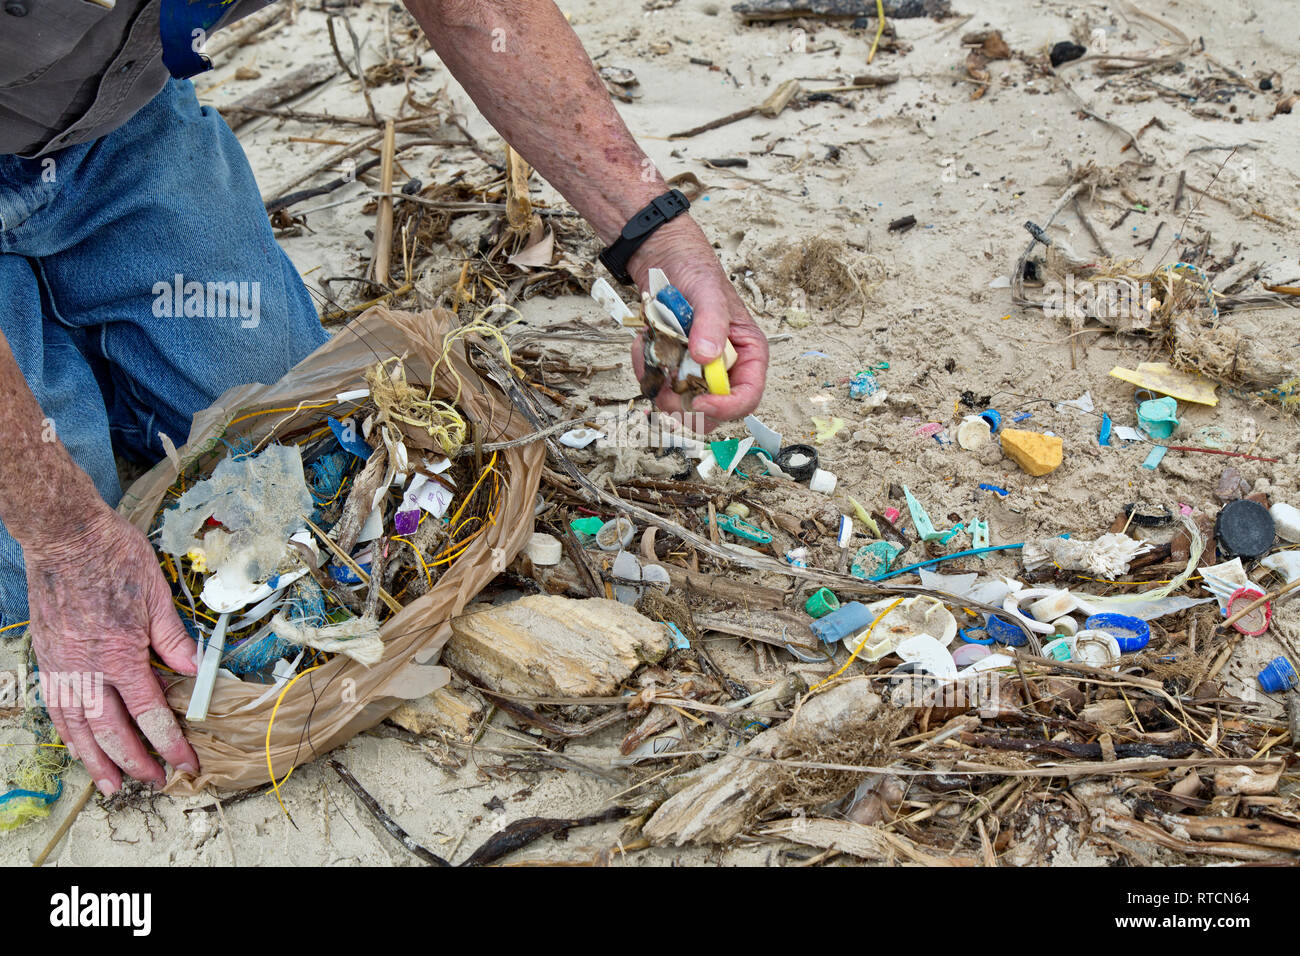 Freiwillige Reinigung, Abfall von Küsten Strand, Kunststoffe, hergestellten Produkte, Angelschnur, Seil, Flaschenverschlüsse, Golf von Mexiko. Stockfoto